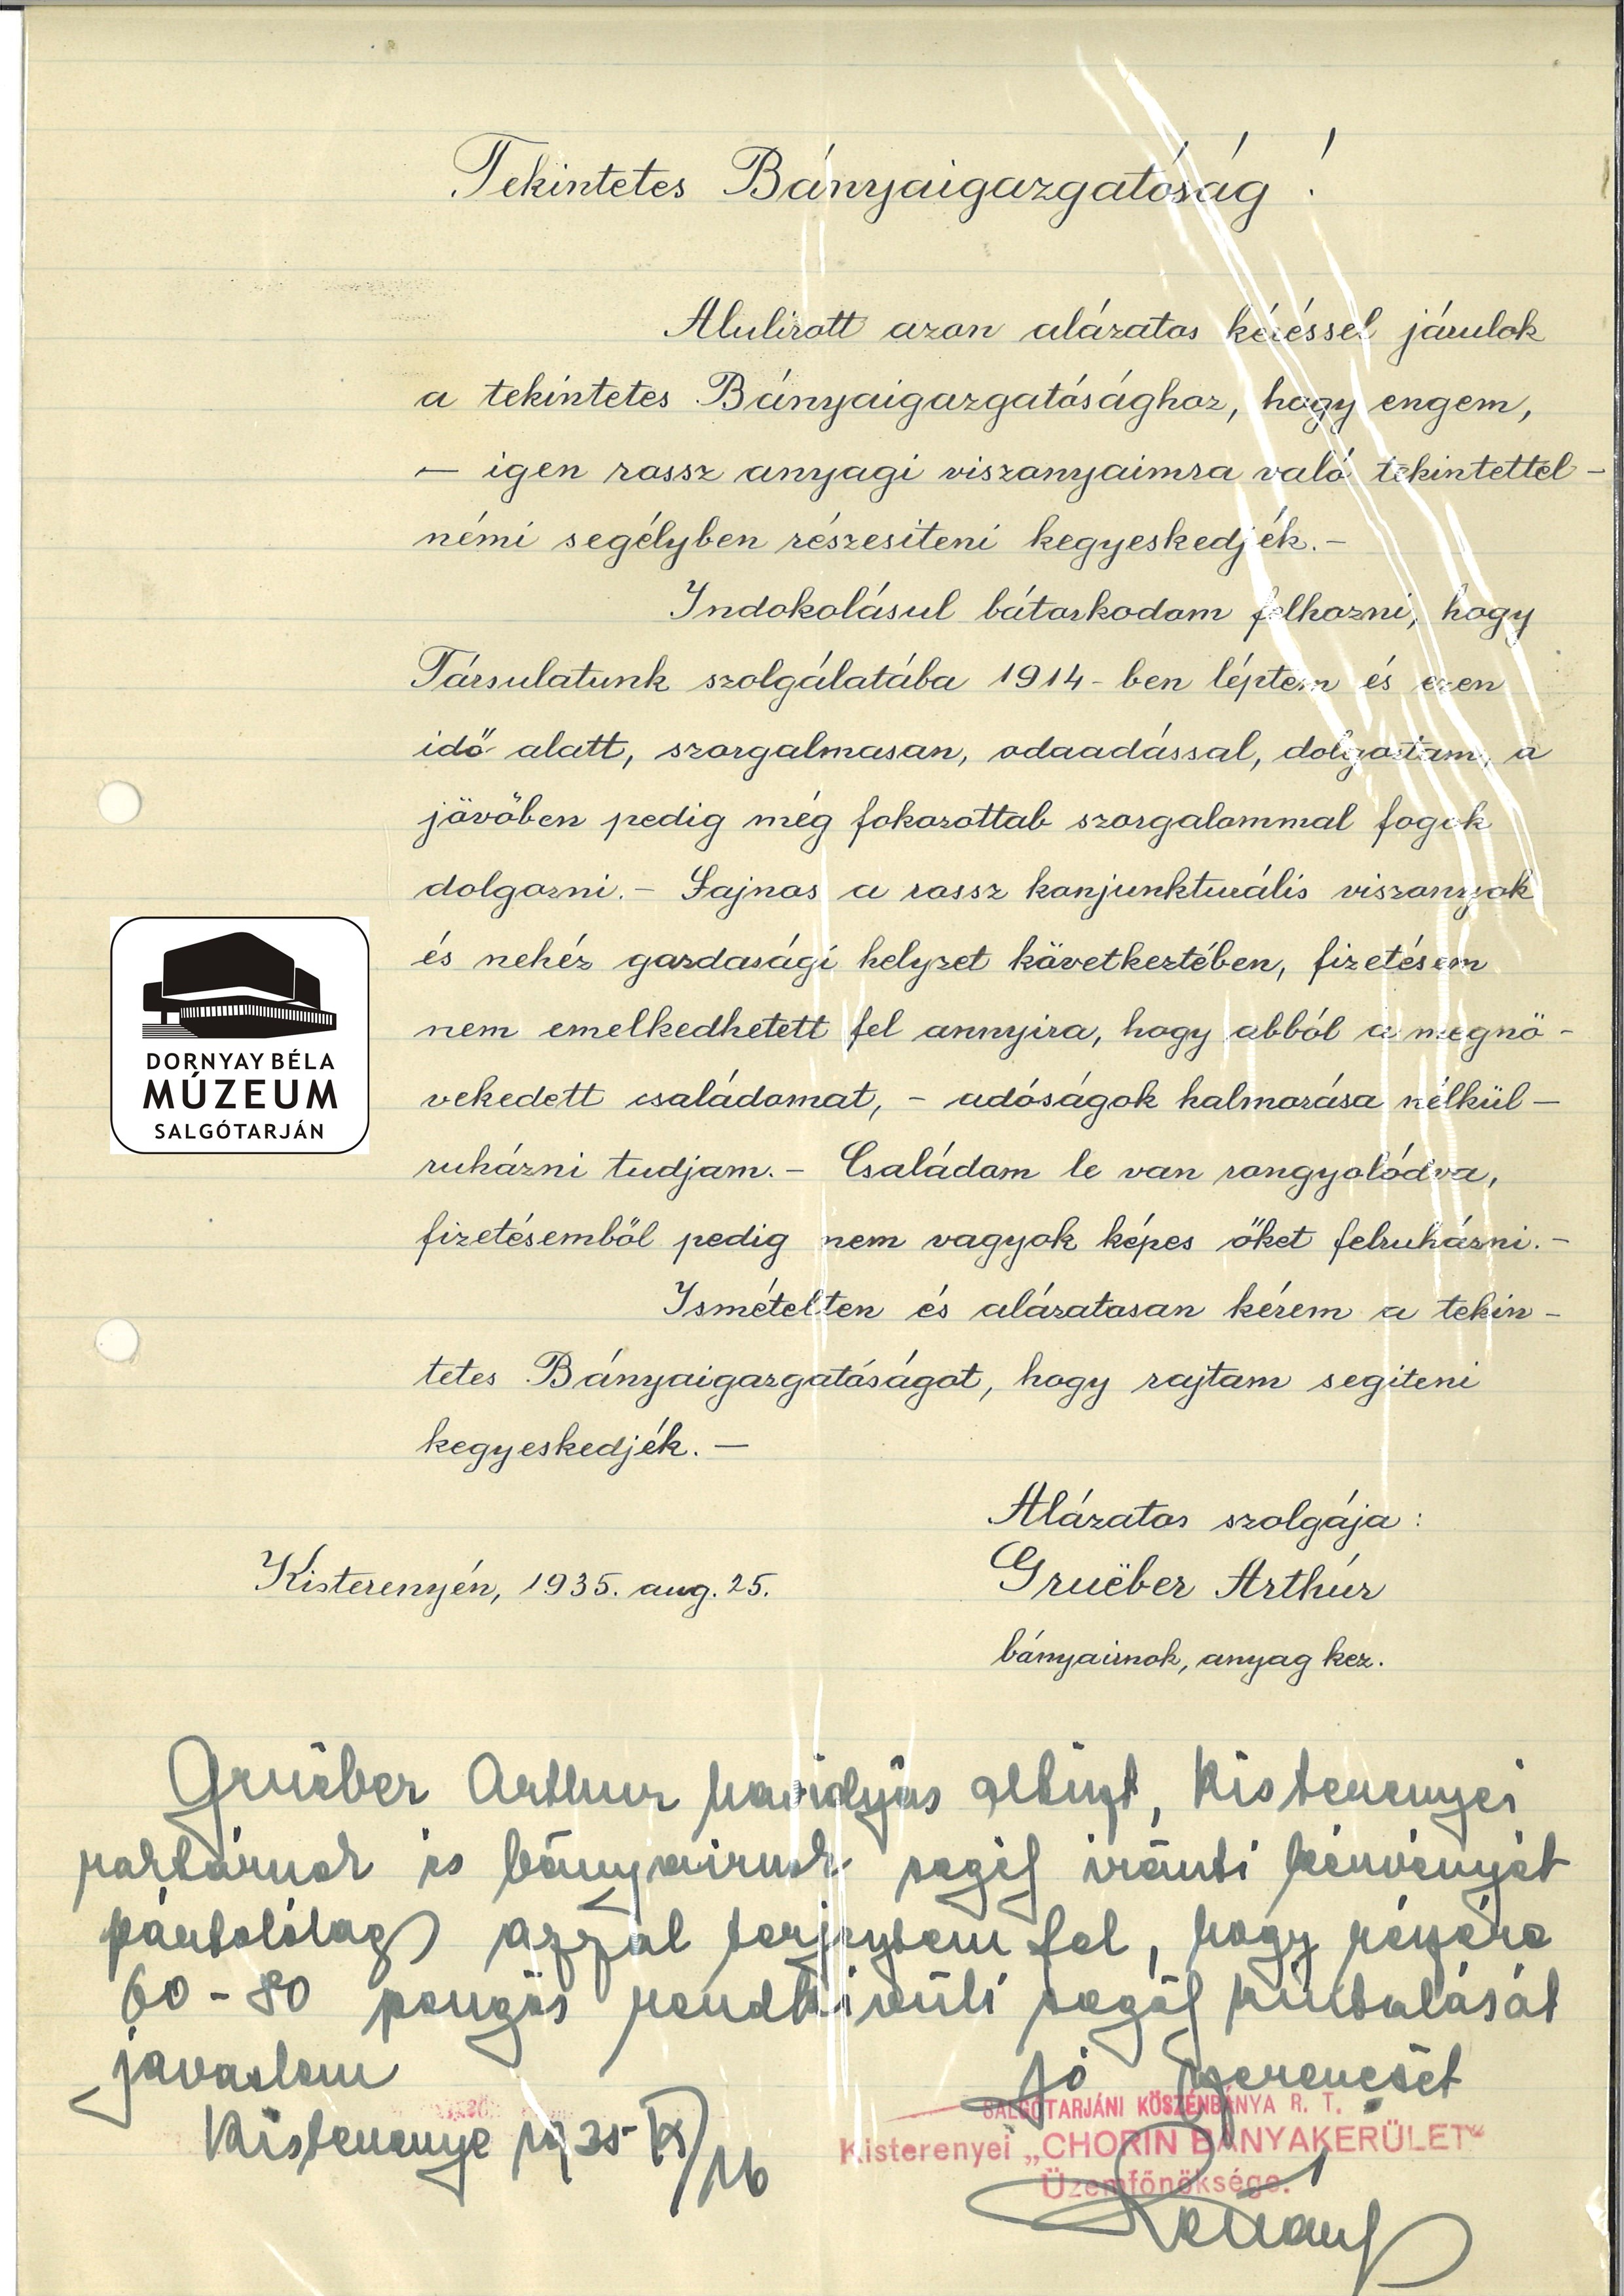 Grueber Artur bányaírnok segély kér az S.K.B. Rt. Igazgatójától (Dornyay Béla Múzeum, Salgótarján CC BY-NC-SA)